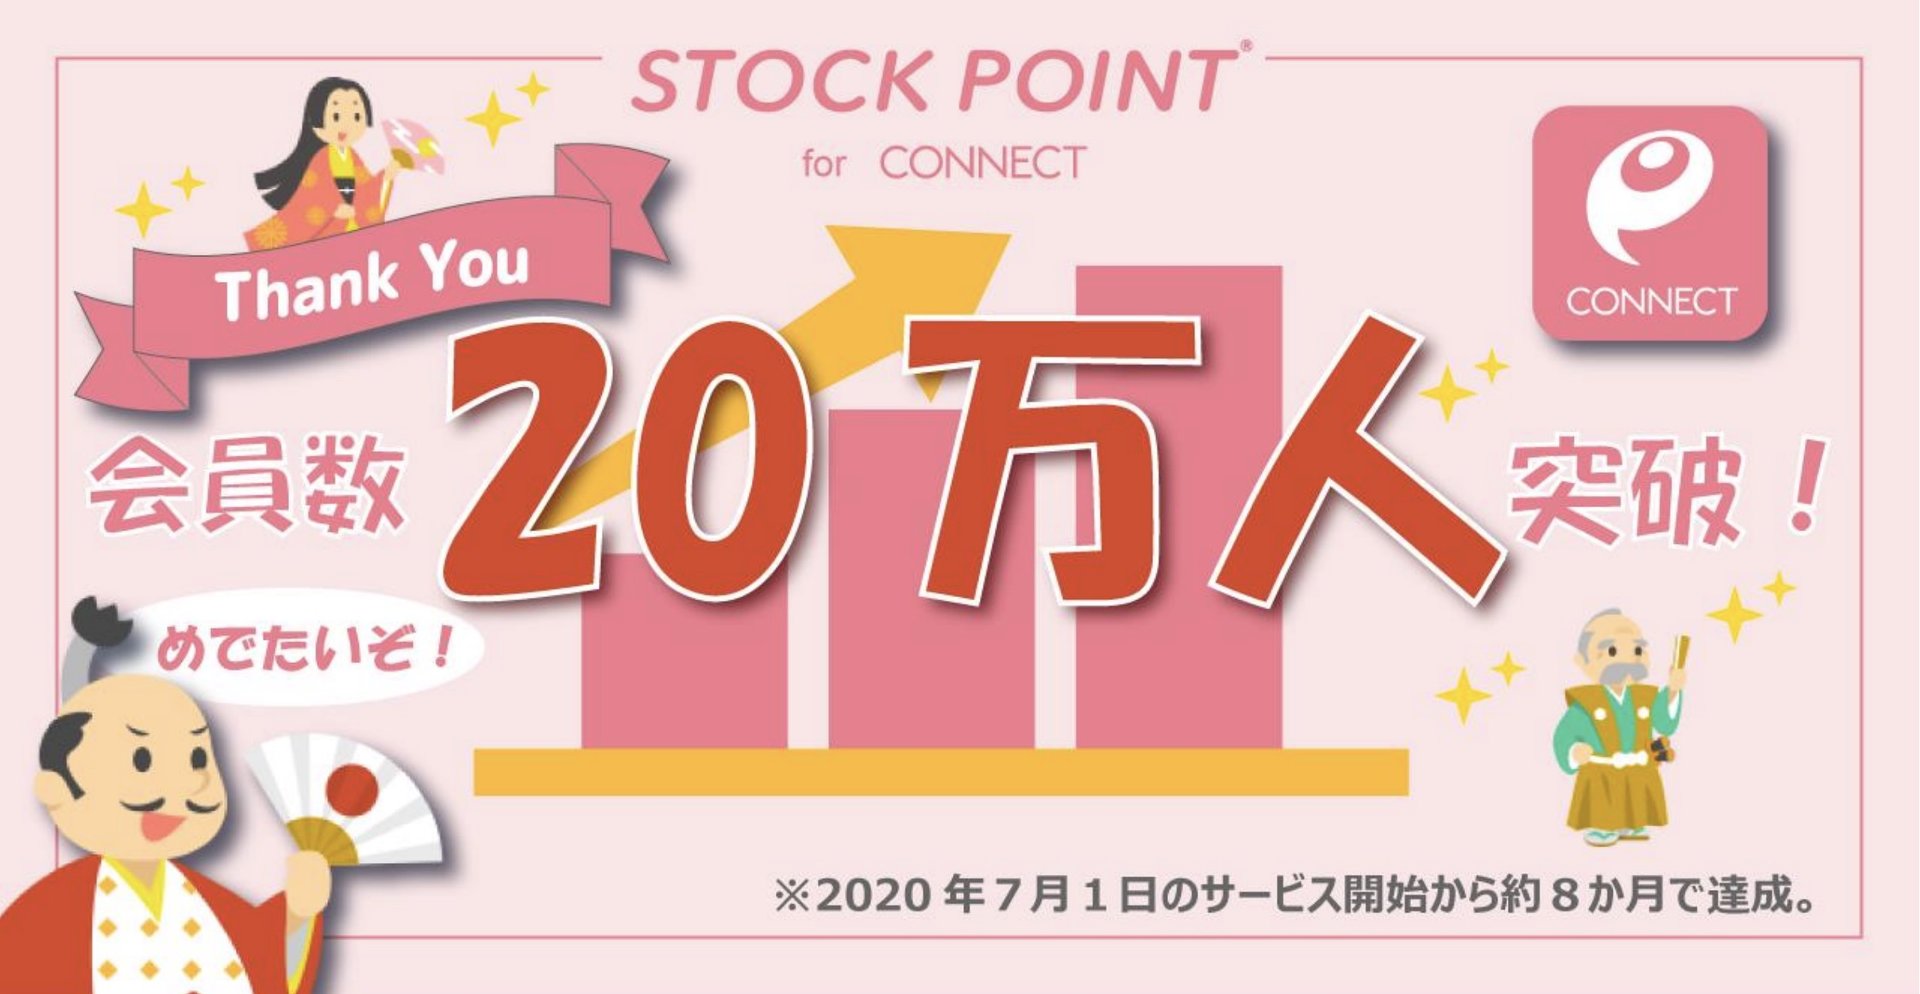 株式に転換可能なポイント運用「StockPoint for CONNECT」、会員20万人突破